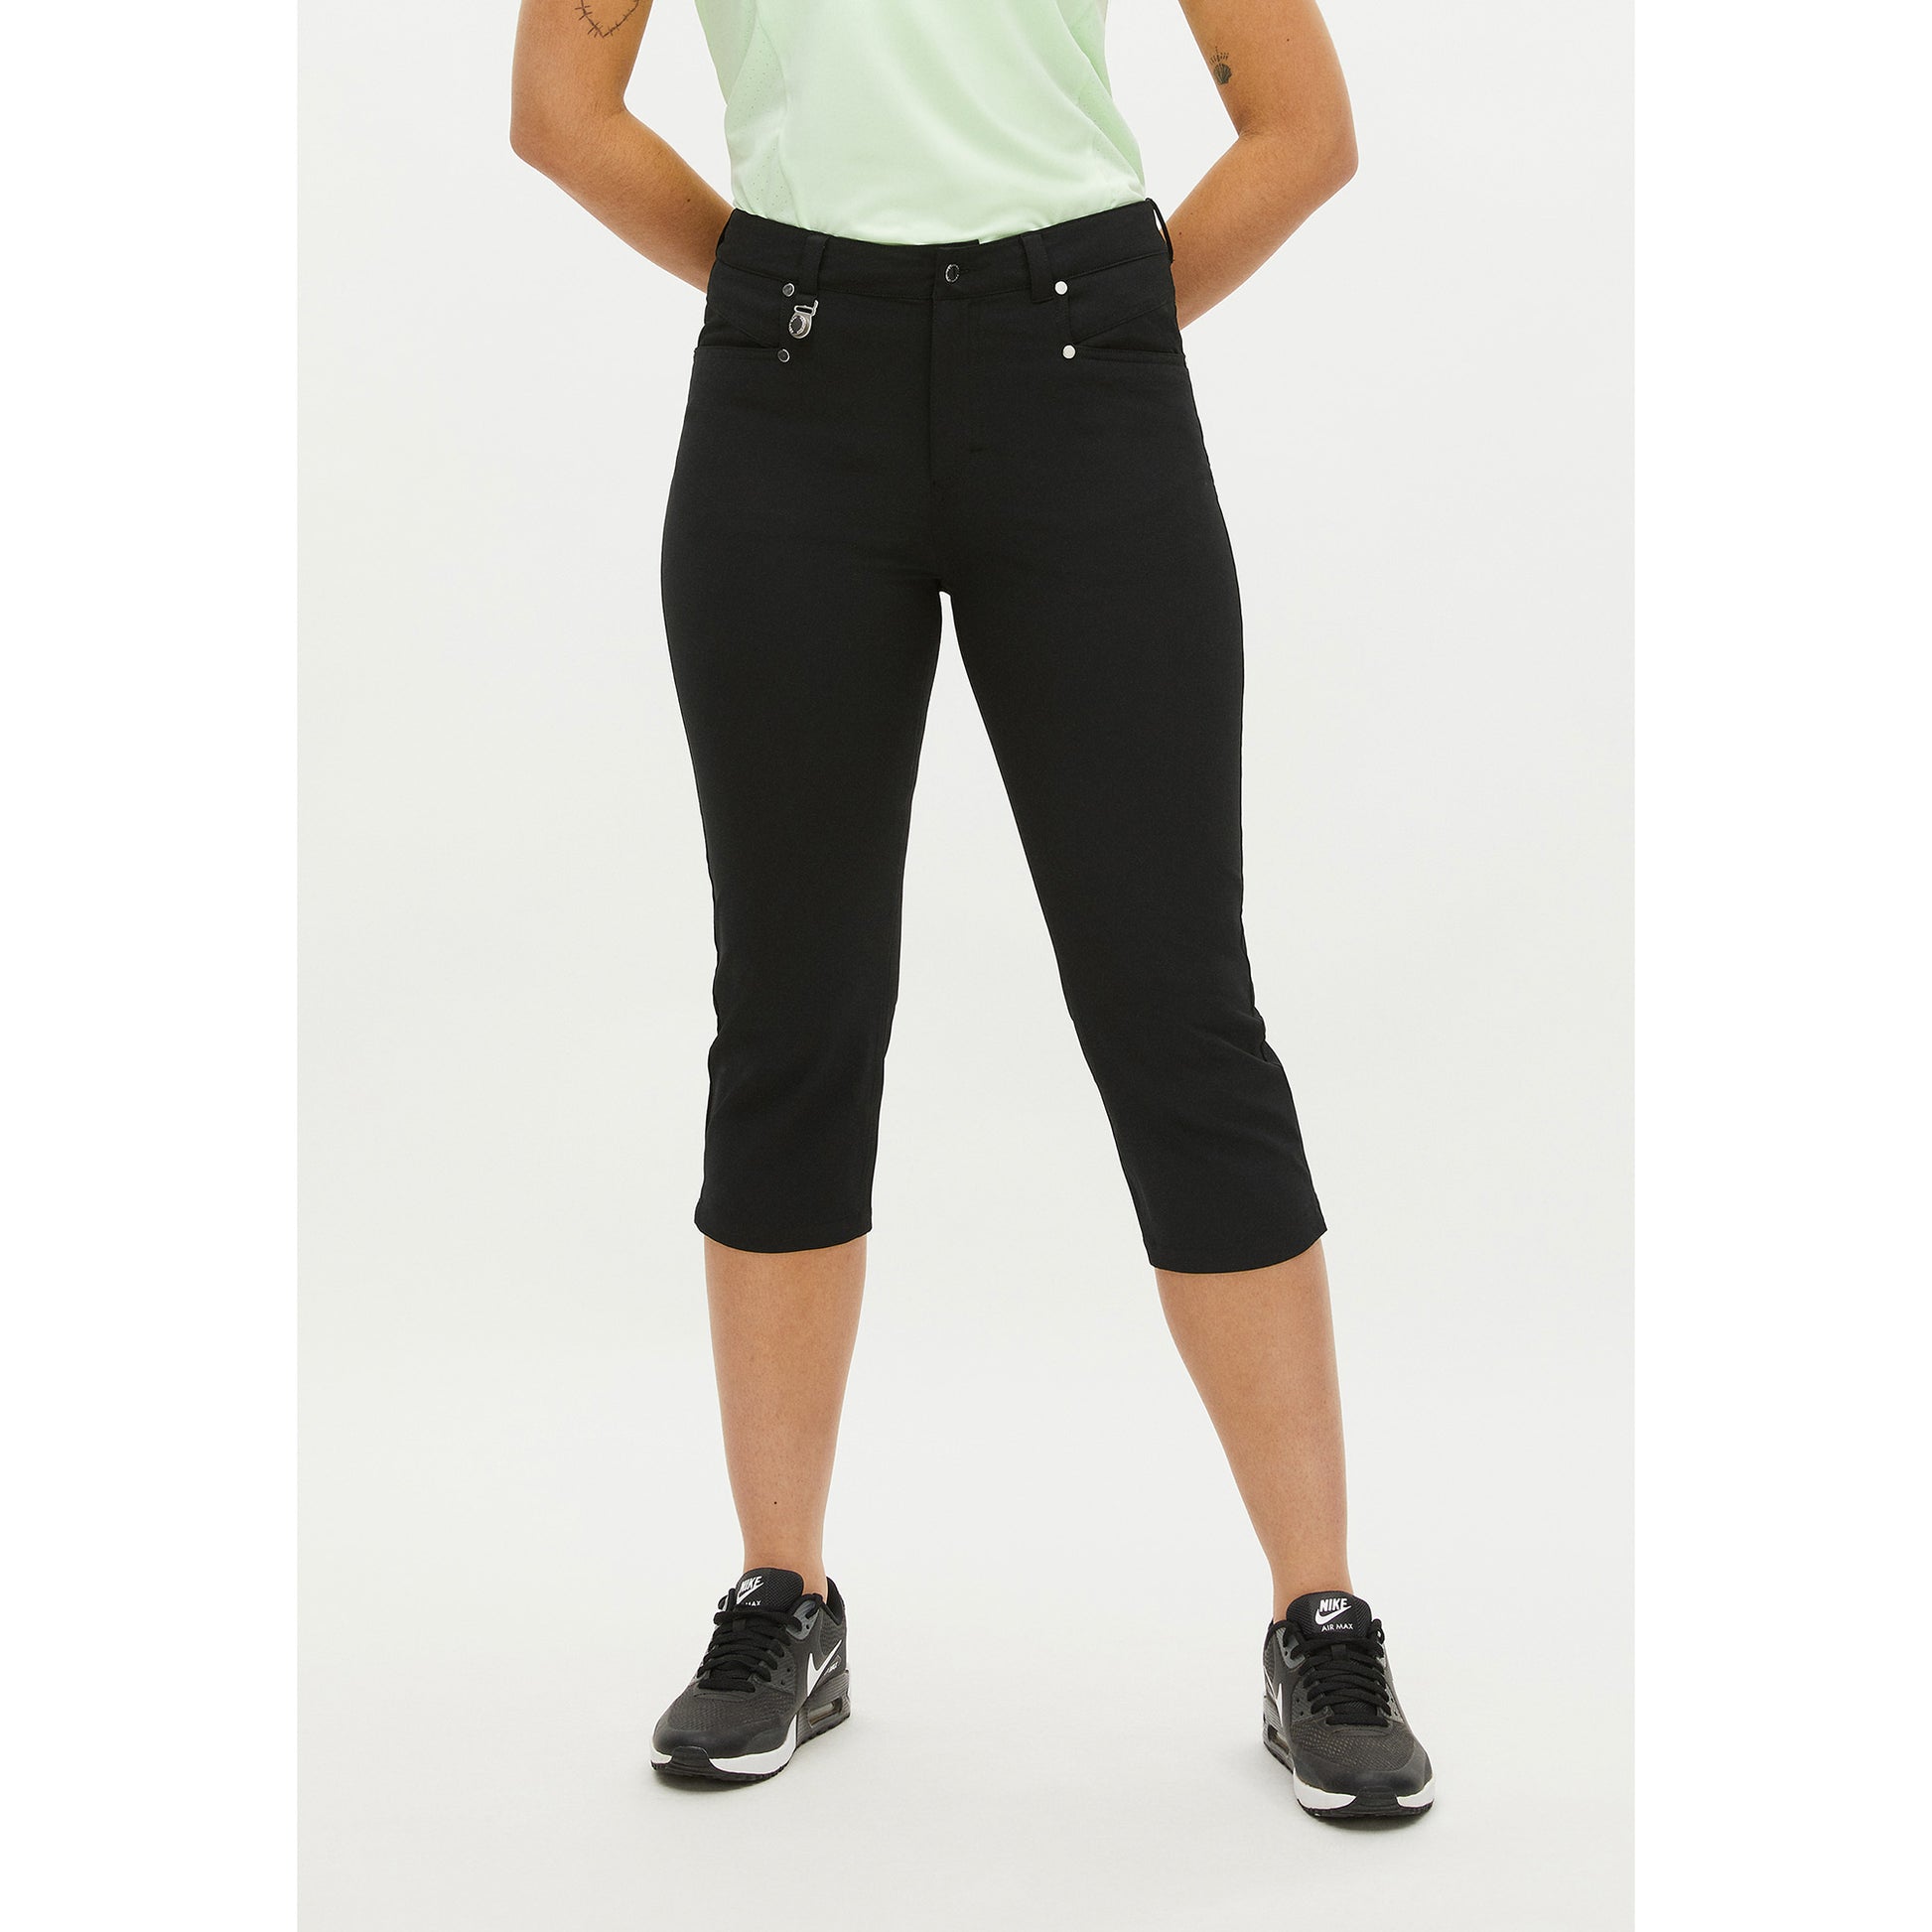 Rohnisch Ladies Chic Slim-Fit Capris in Black – GolfGarb